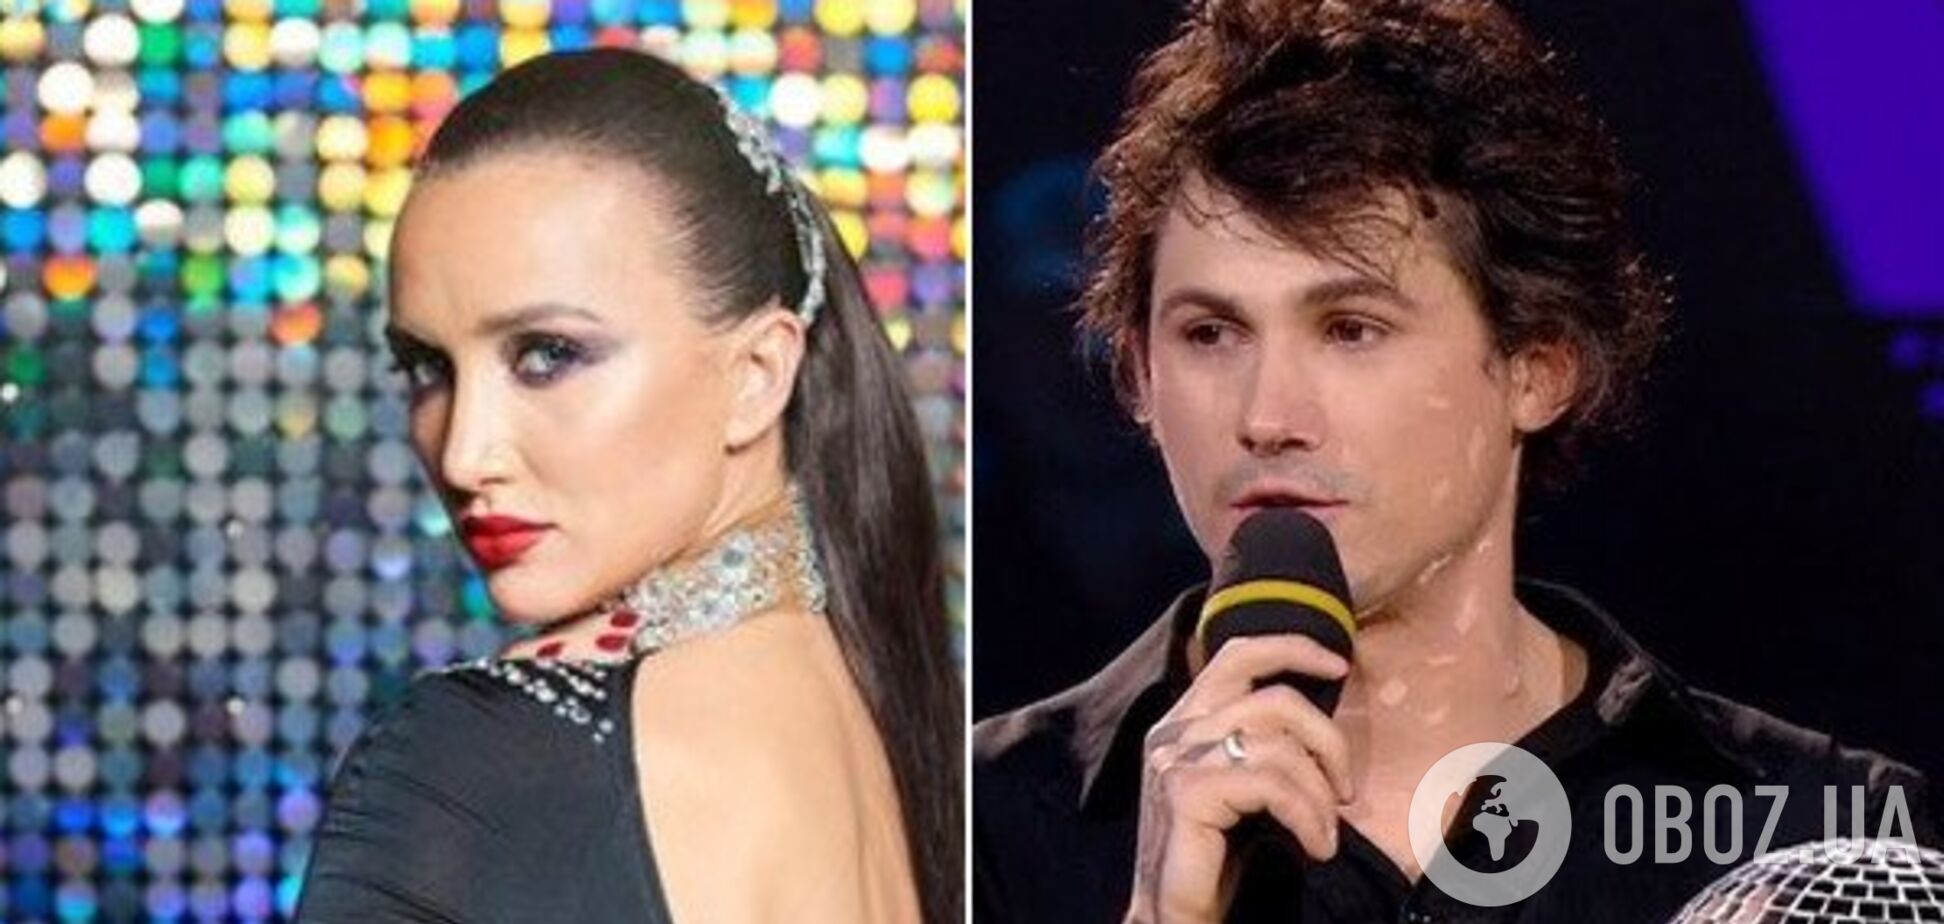 'Пропало уважение': победитель 'Танці з зірками' серьезно обидел Ризатдинову